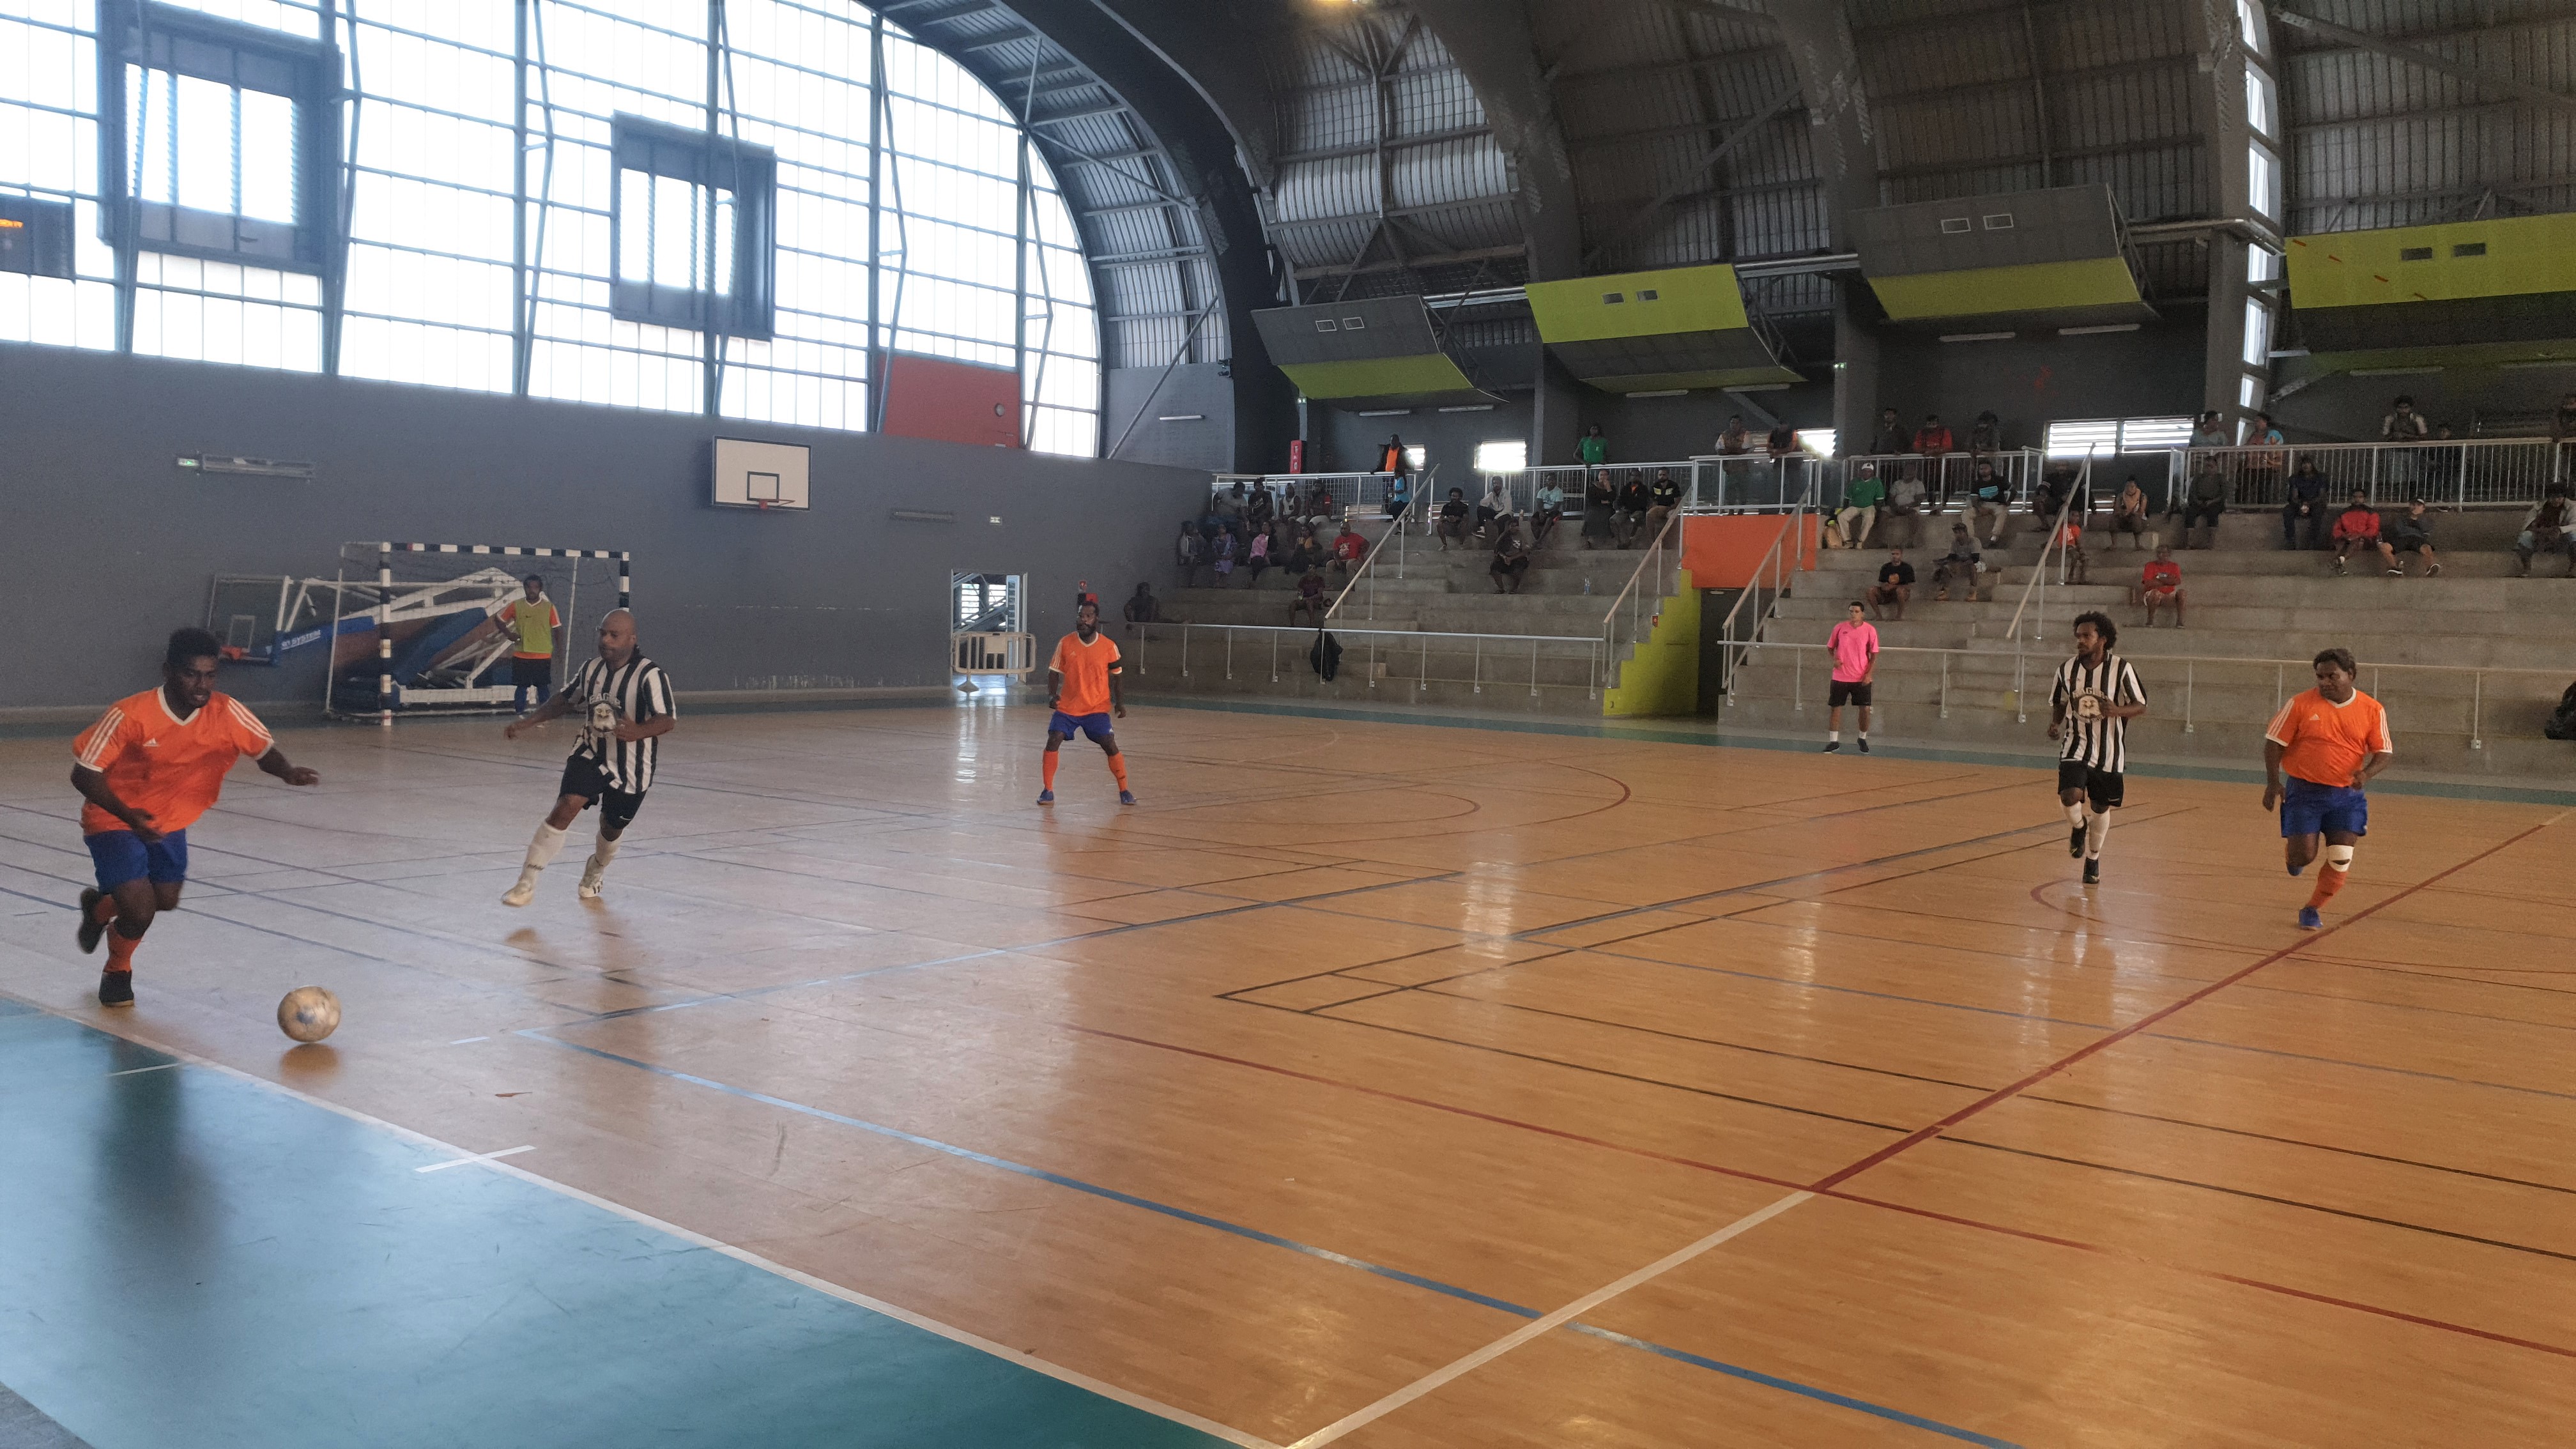 TRAPUT gagne le duel des promus face à BWYRU / SUPER LIGUE Futsal - J8 